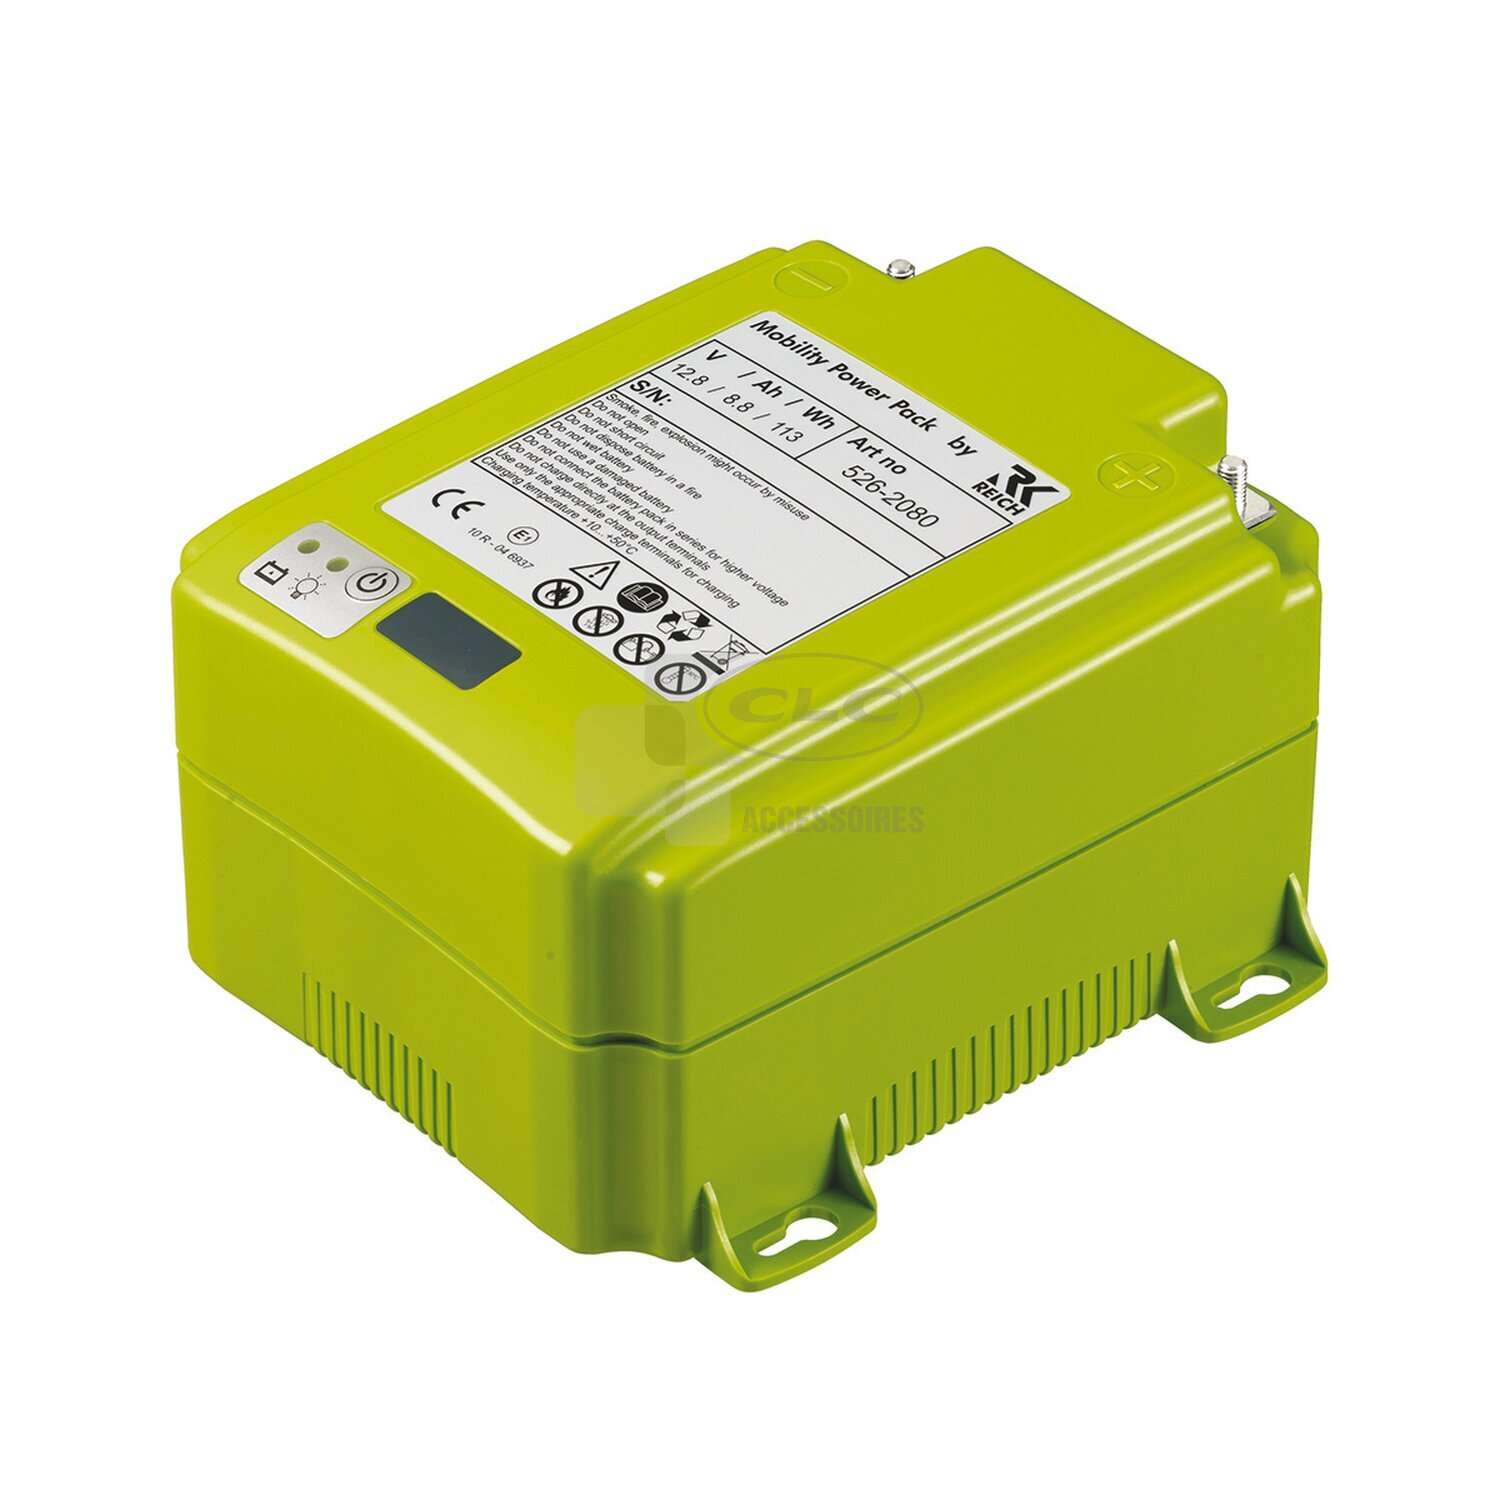 CLC Accessoires - Batterie Mobility Power pack pour déplace caravane 044258  - Groupe CLC Loisirs